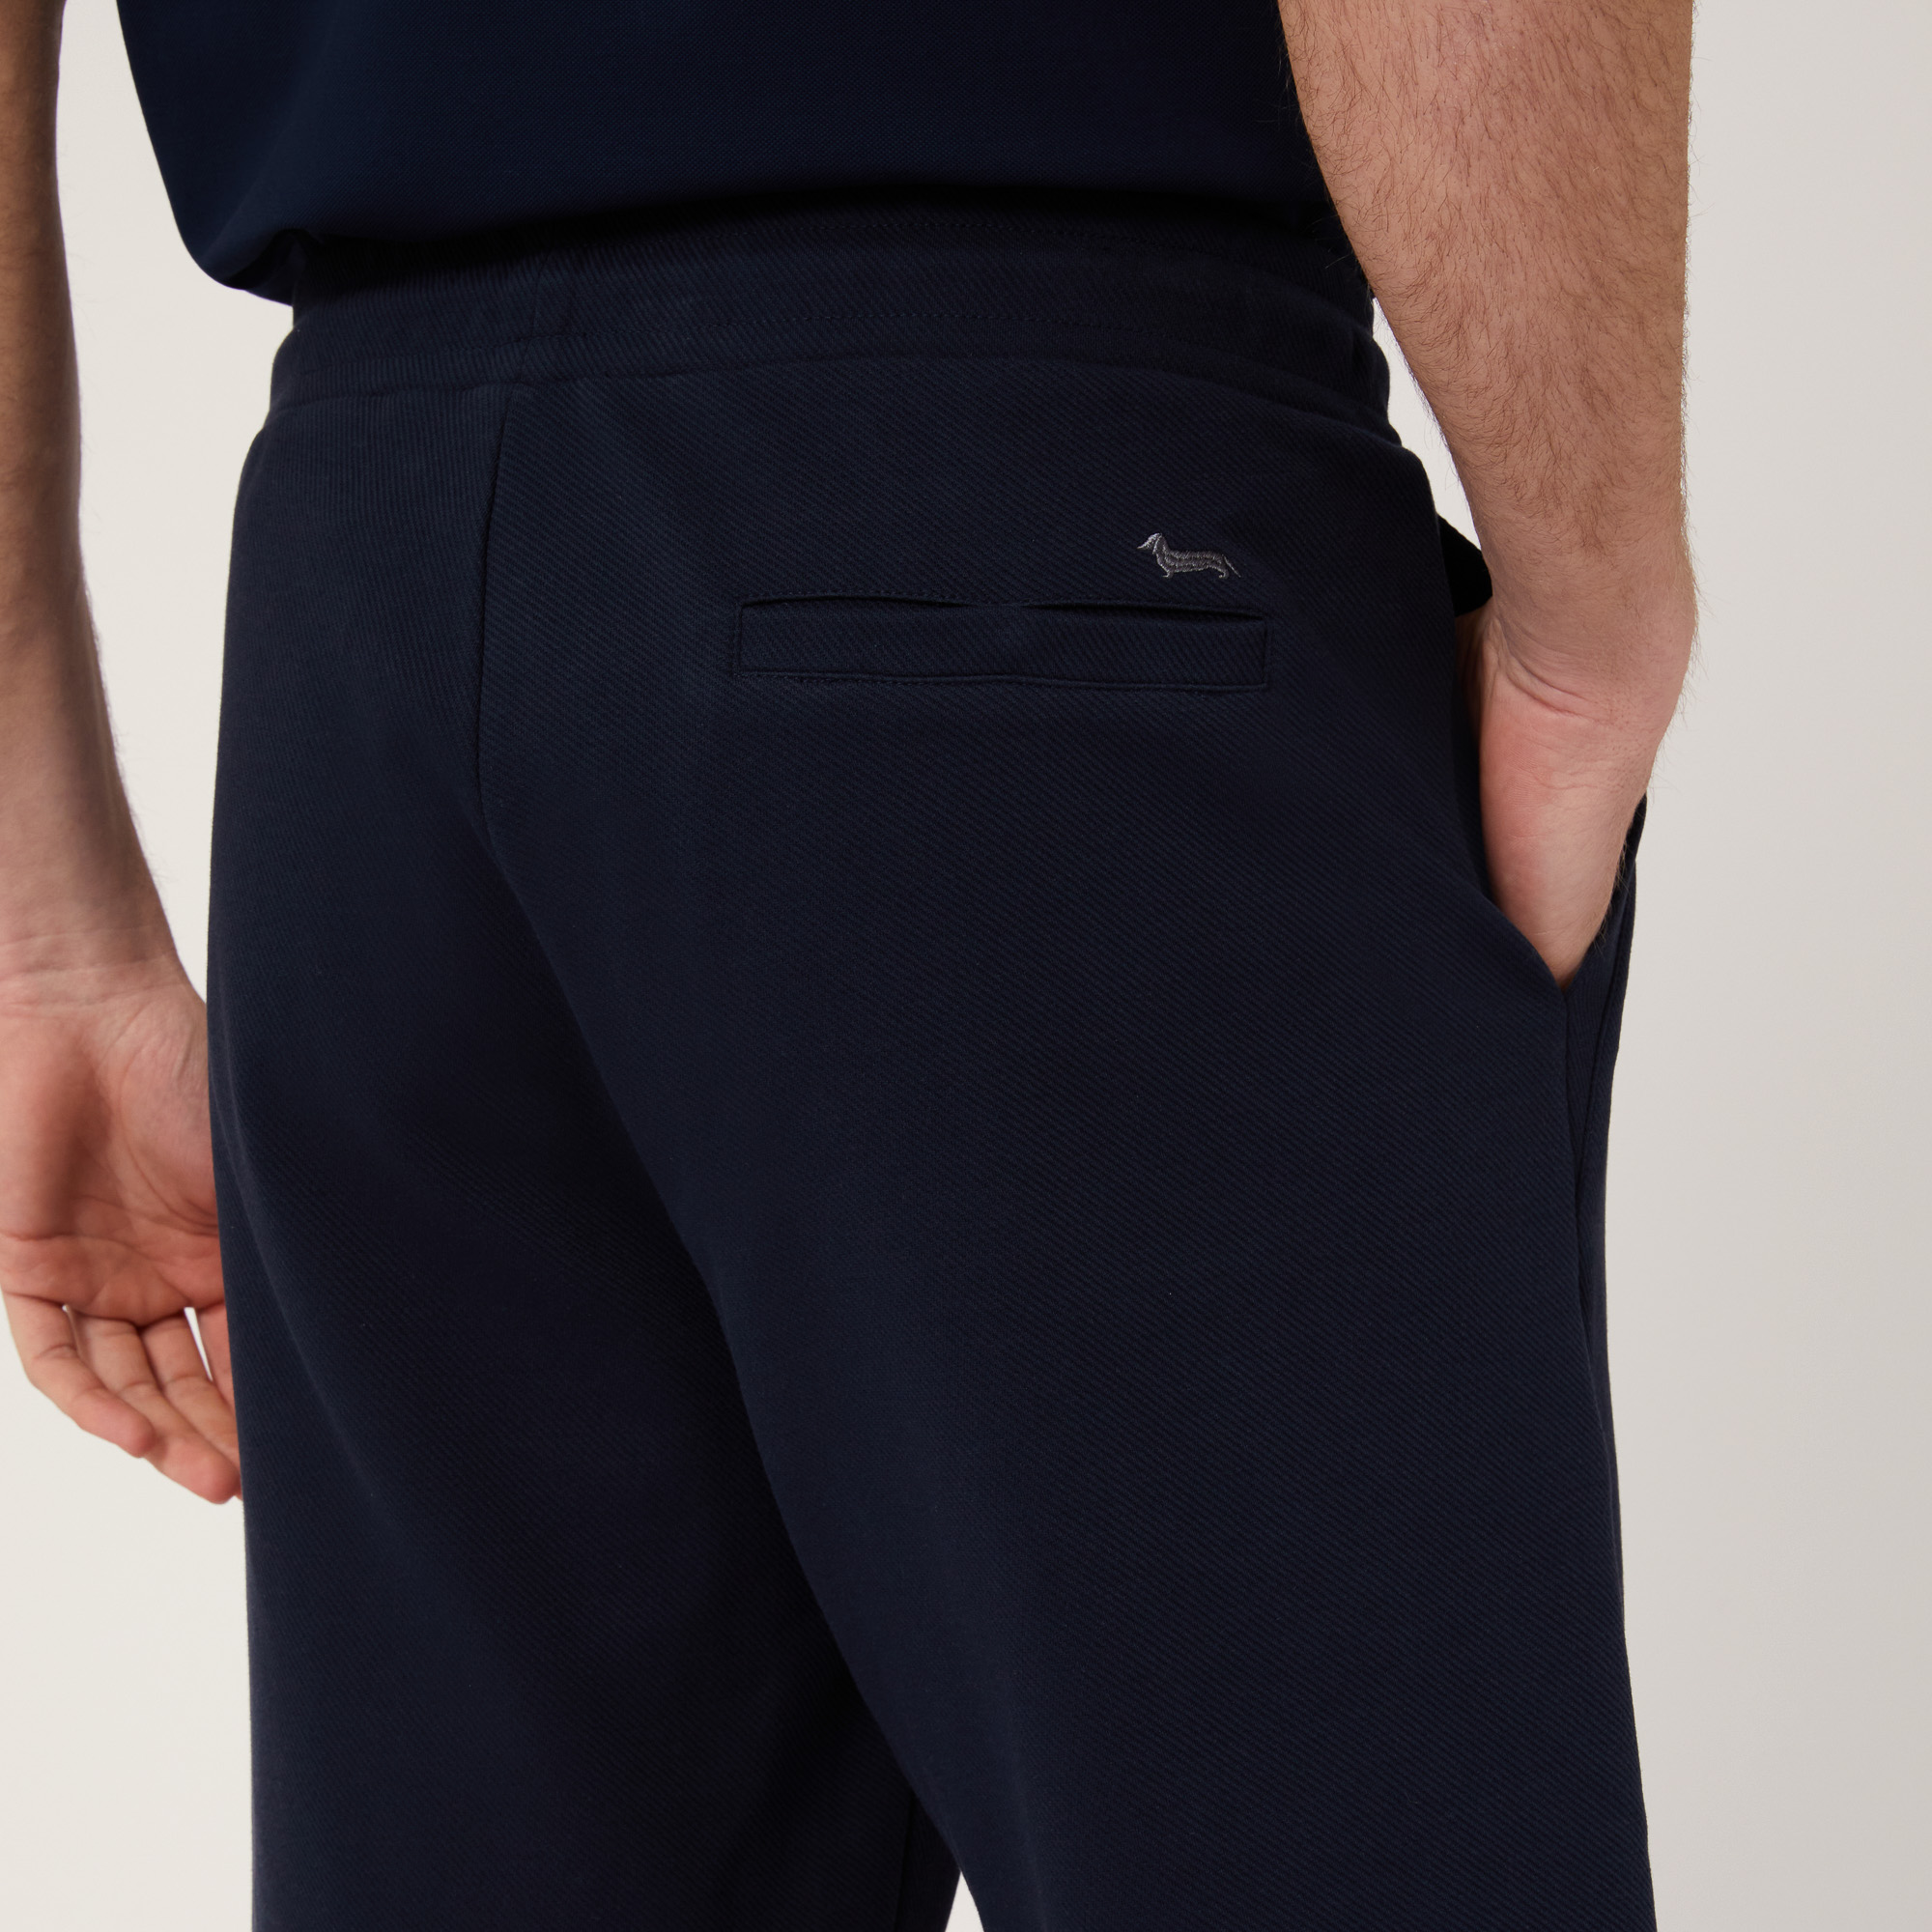 Shorts aus Stretch-Baumwolle mit Tasche hinten, Blau, large image number 2